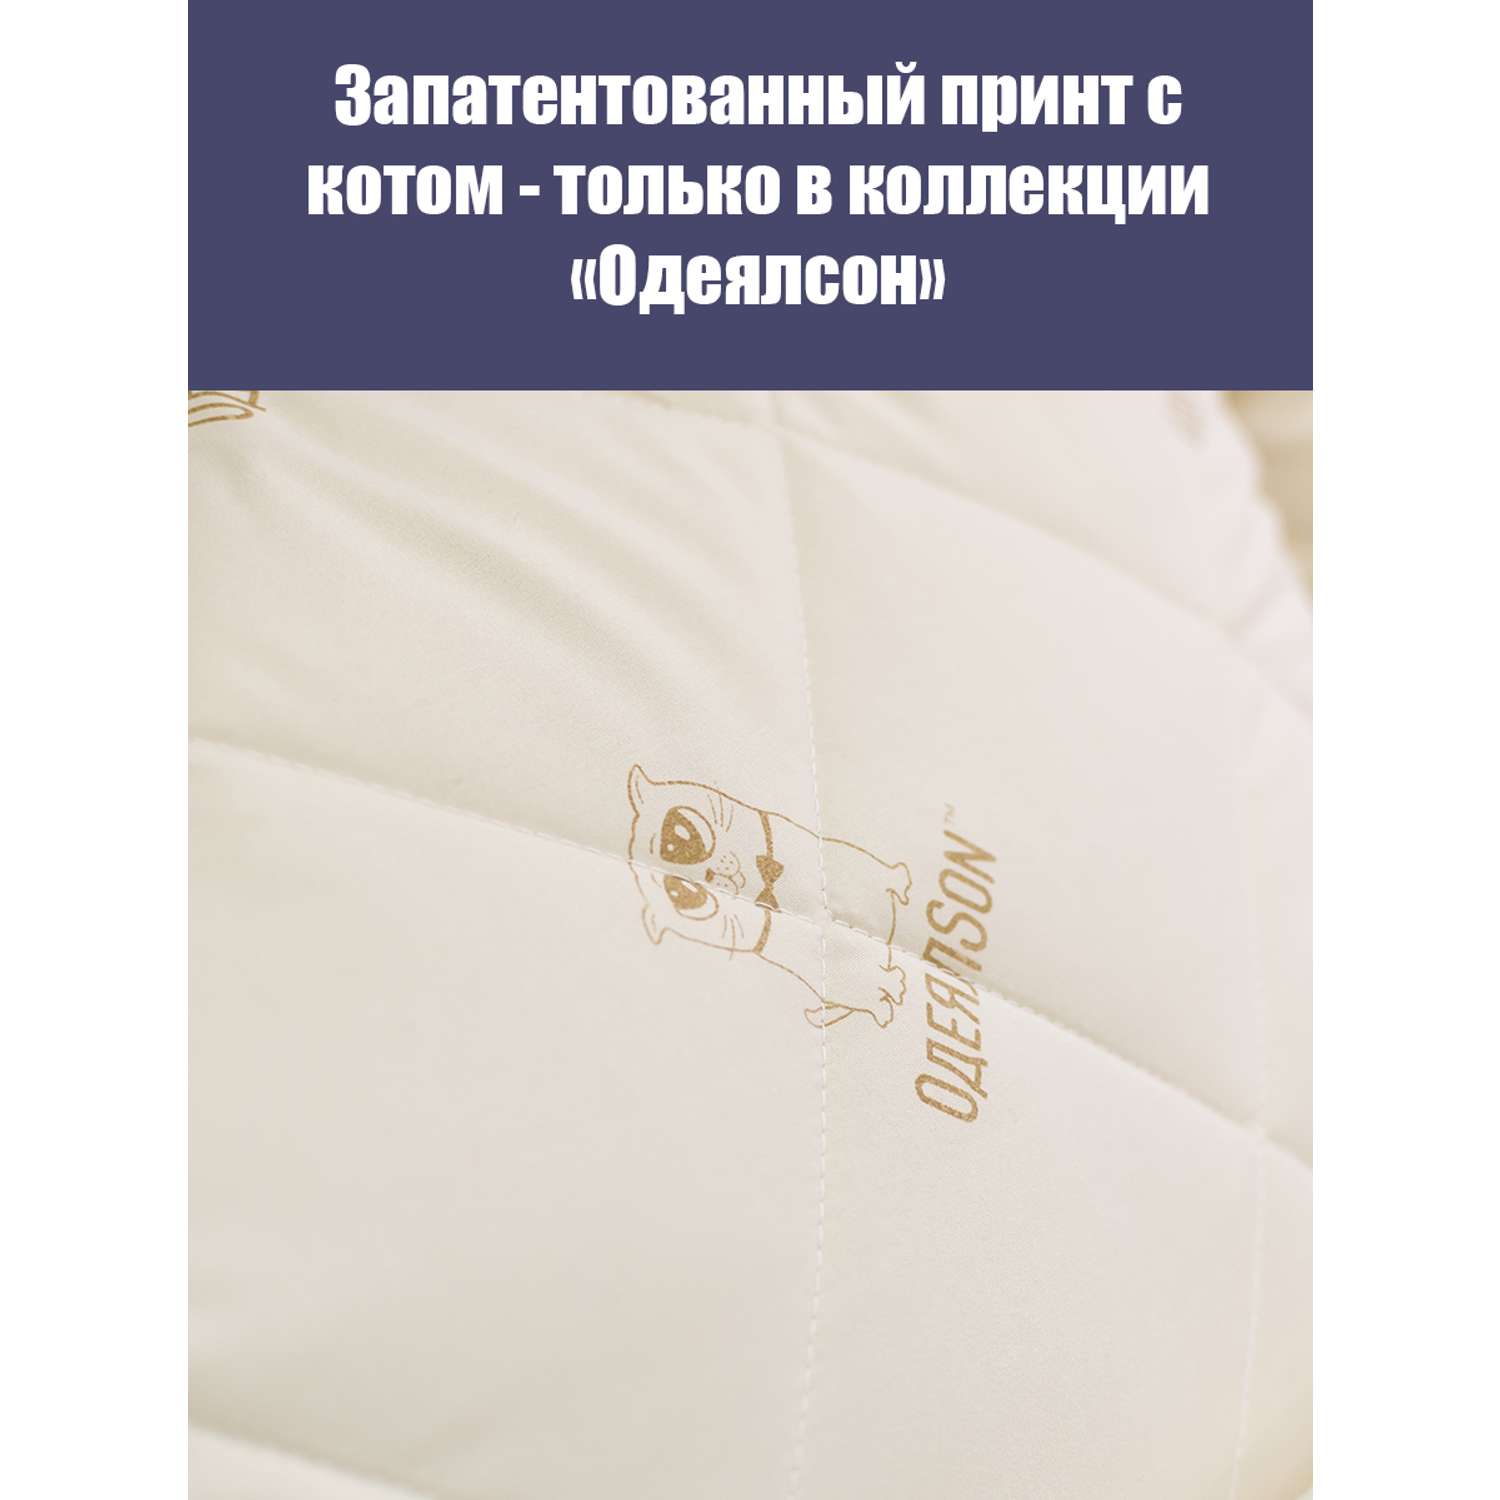 Одеяло Мягкий сон одеялсон 200x220 см - фото 2